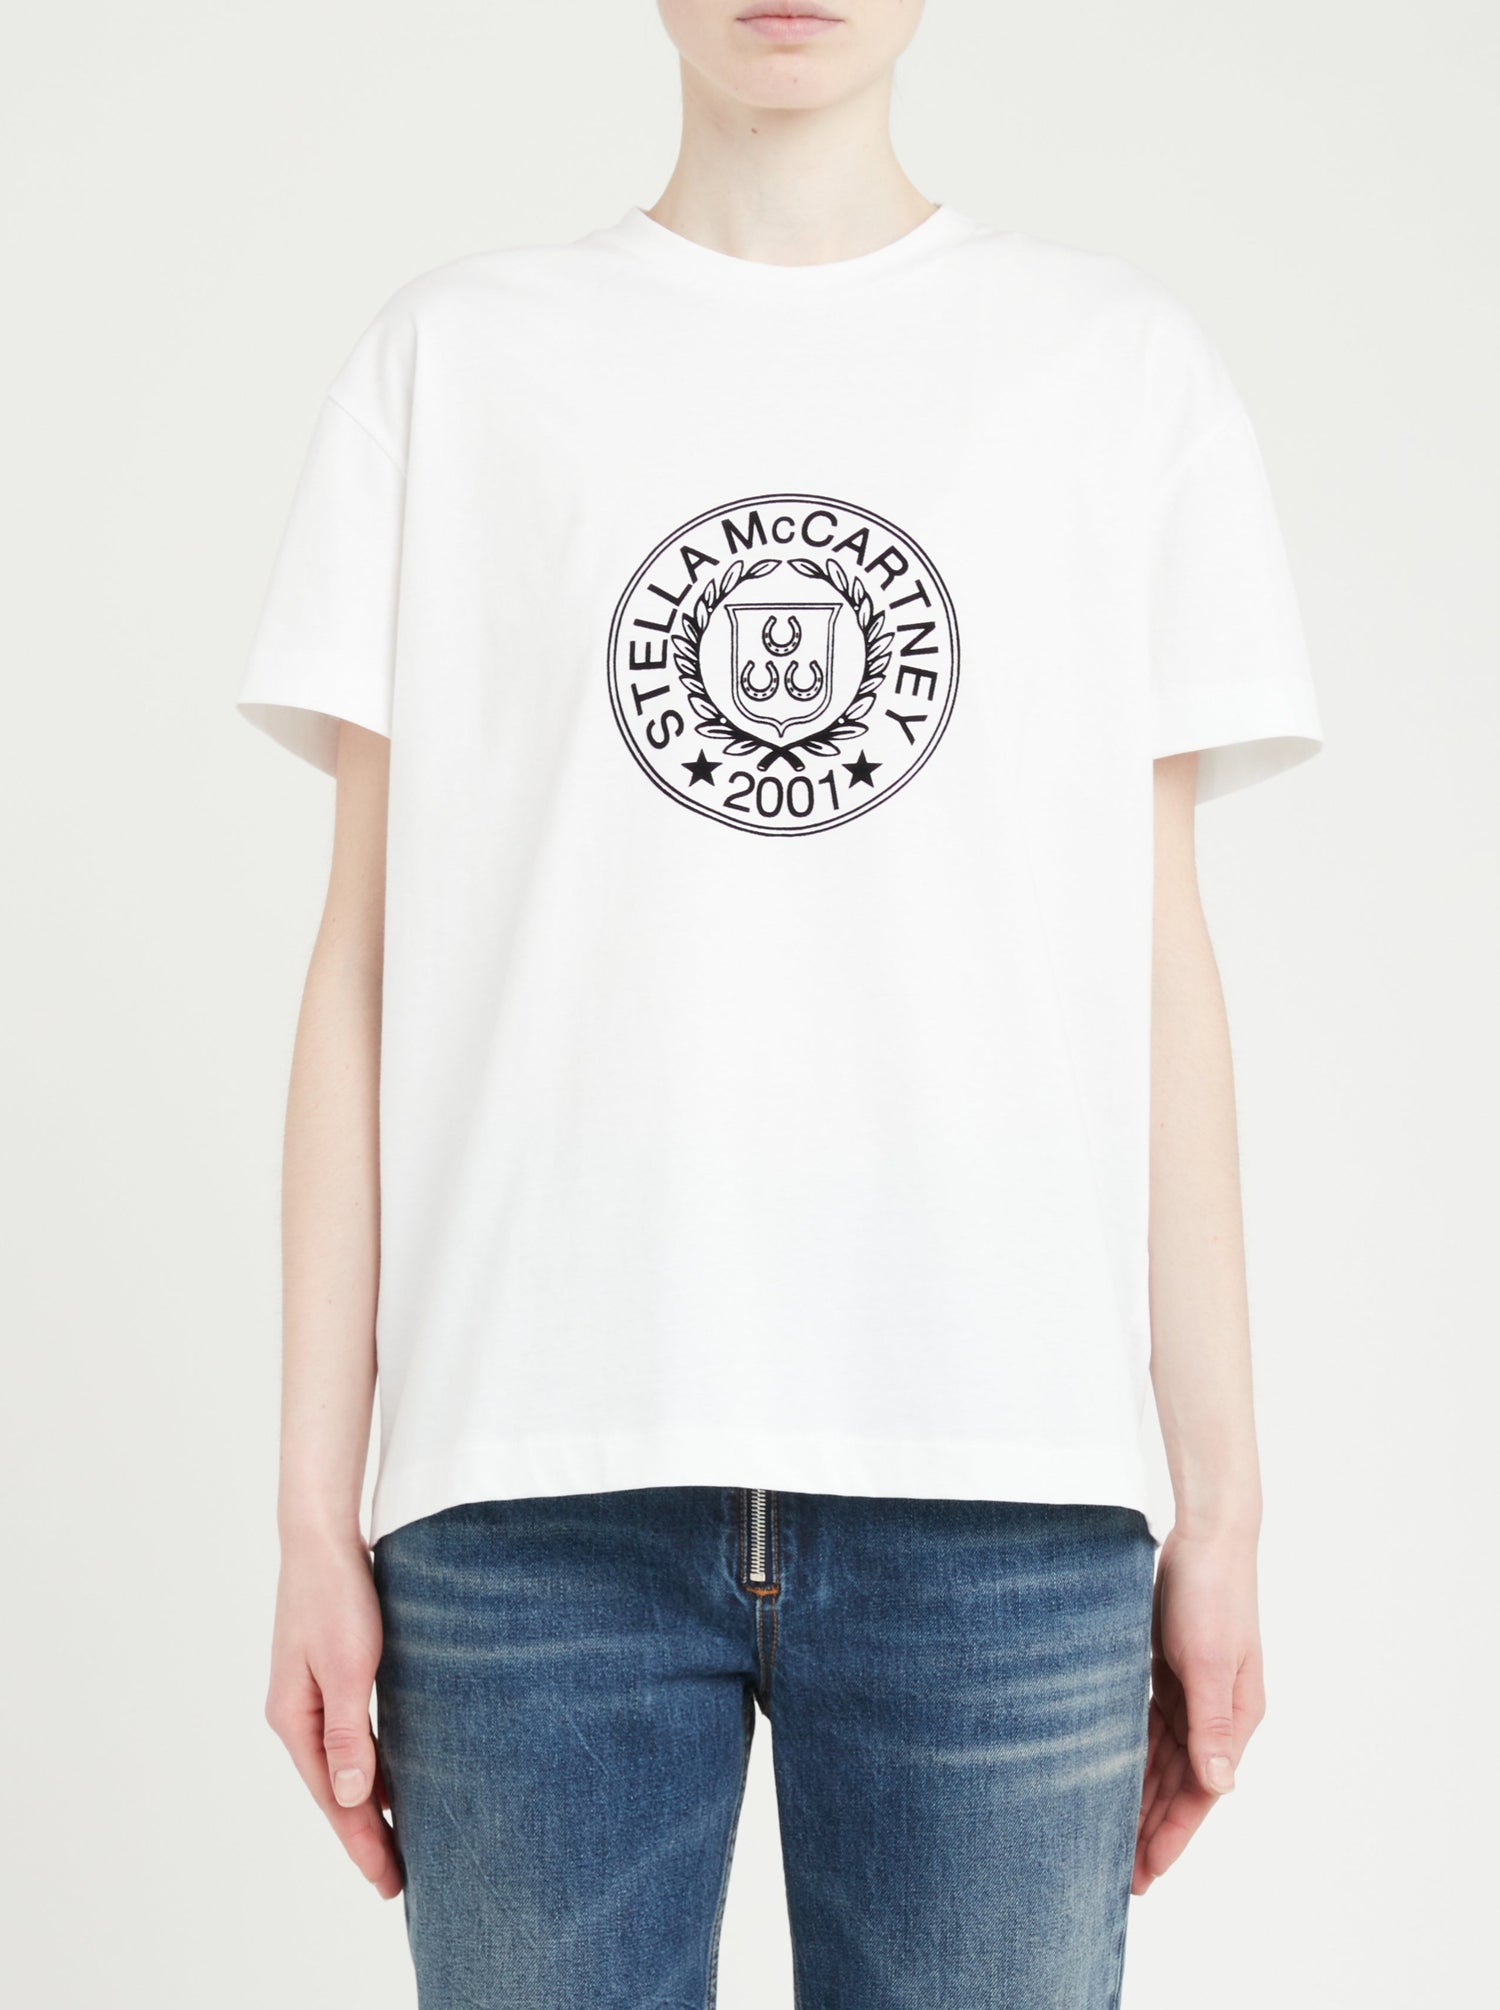 Stella McCartney: White logo t-shirt. Style 6J02413SPY35.